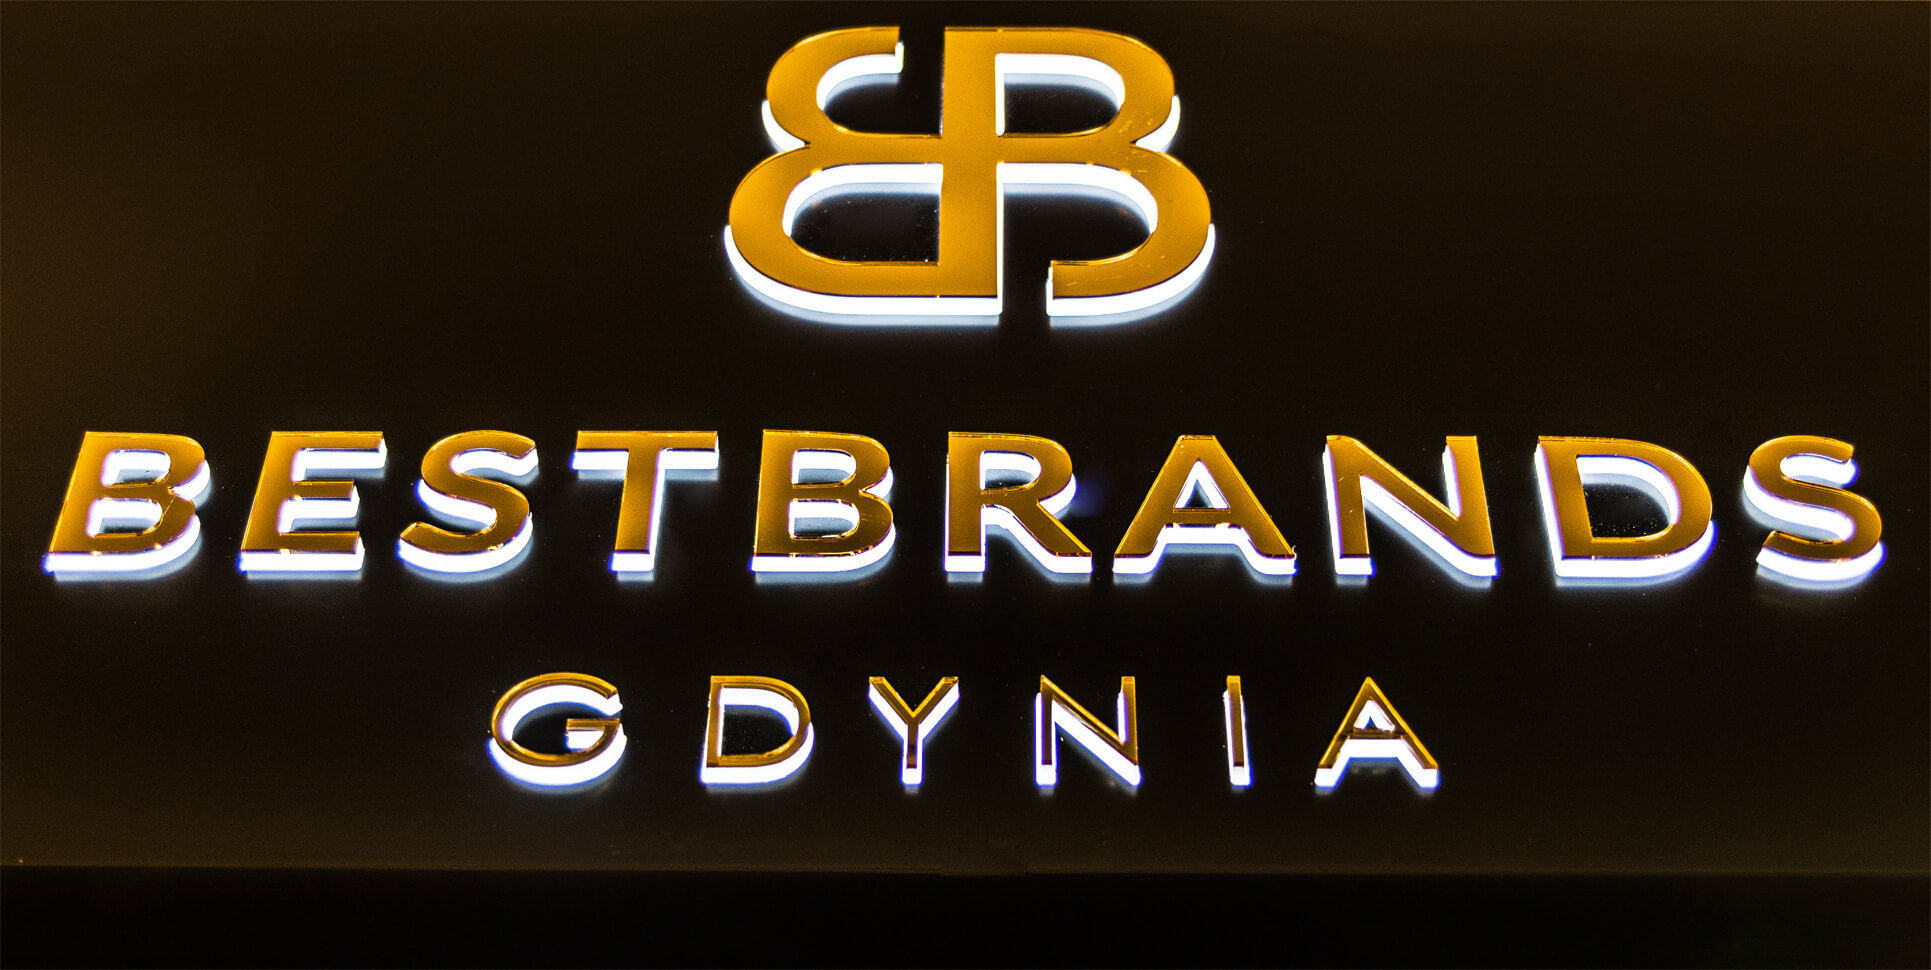 Migliori marche Gdynia - Bestbrands Gdynia - cofanetto pubblicitario luminoso posto sopra l'ingresso